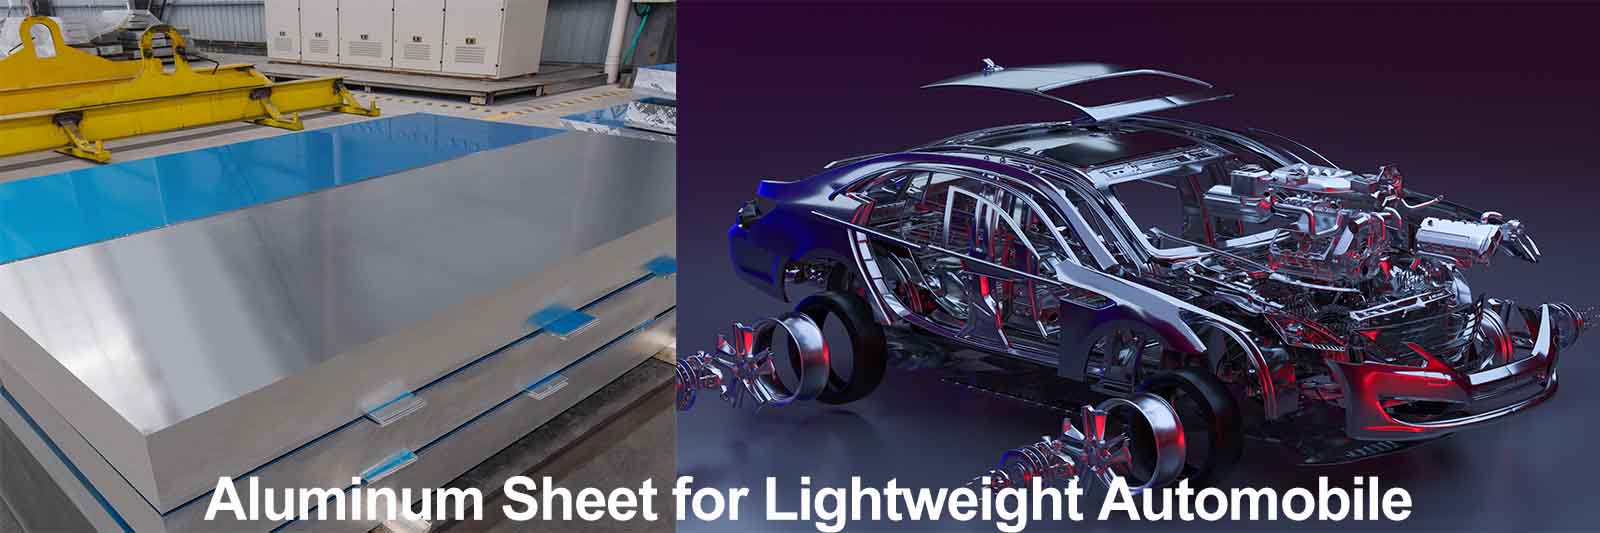 aluminum sheet for lightweight automobile